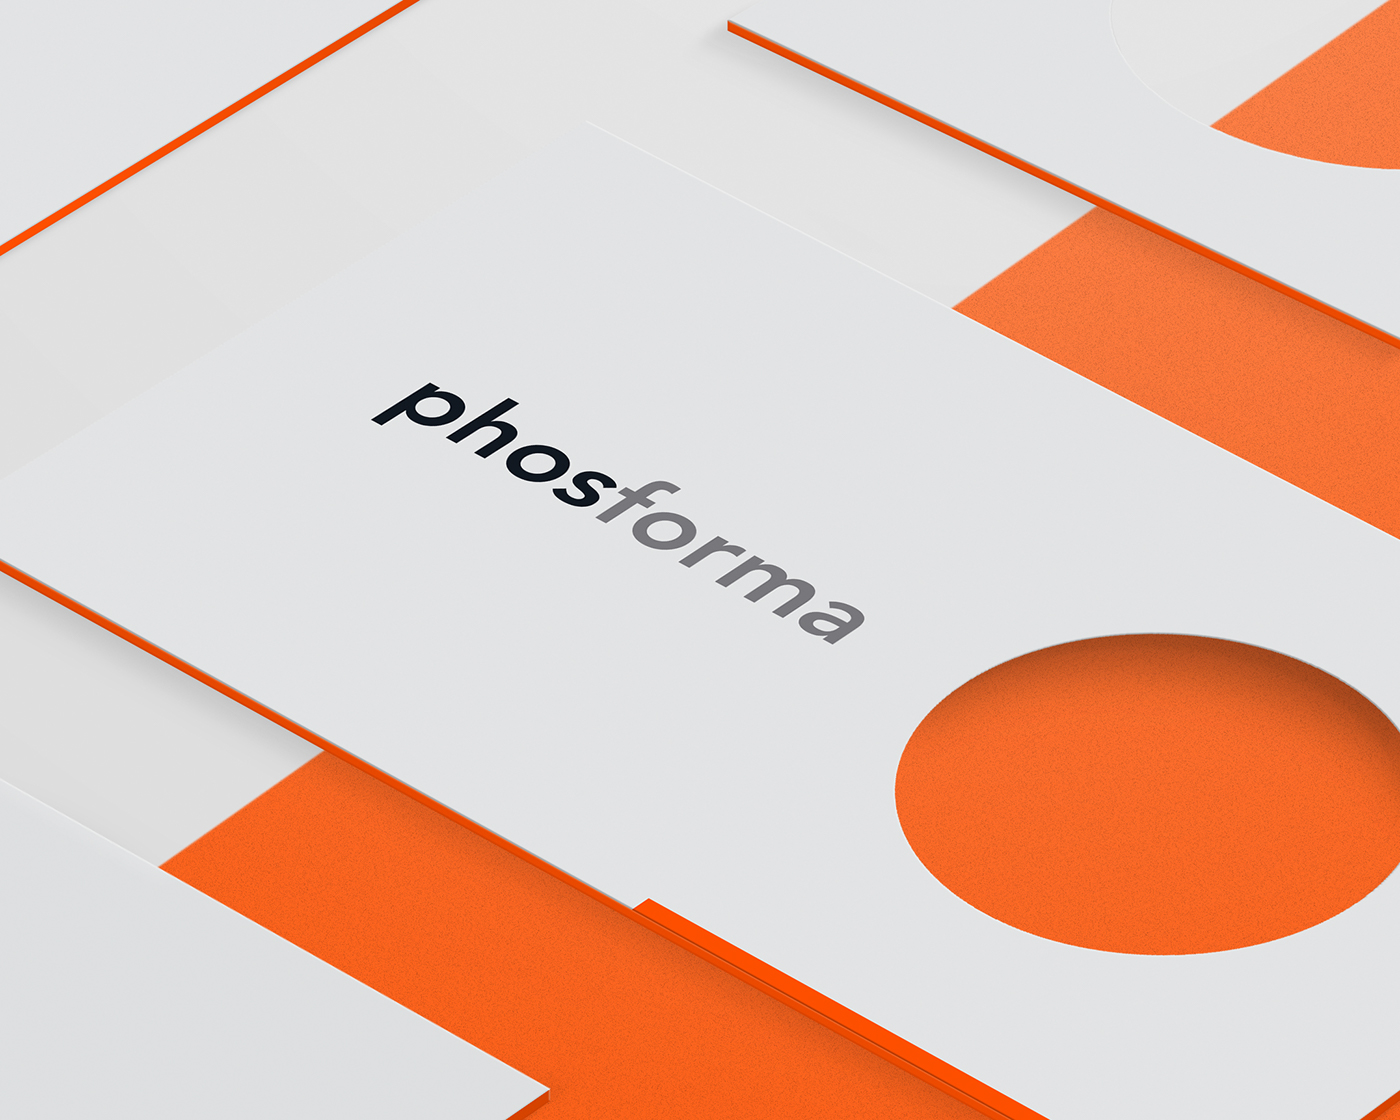 照明品牌Phosfroma极简风格VI设计